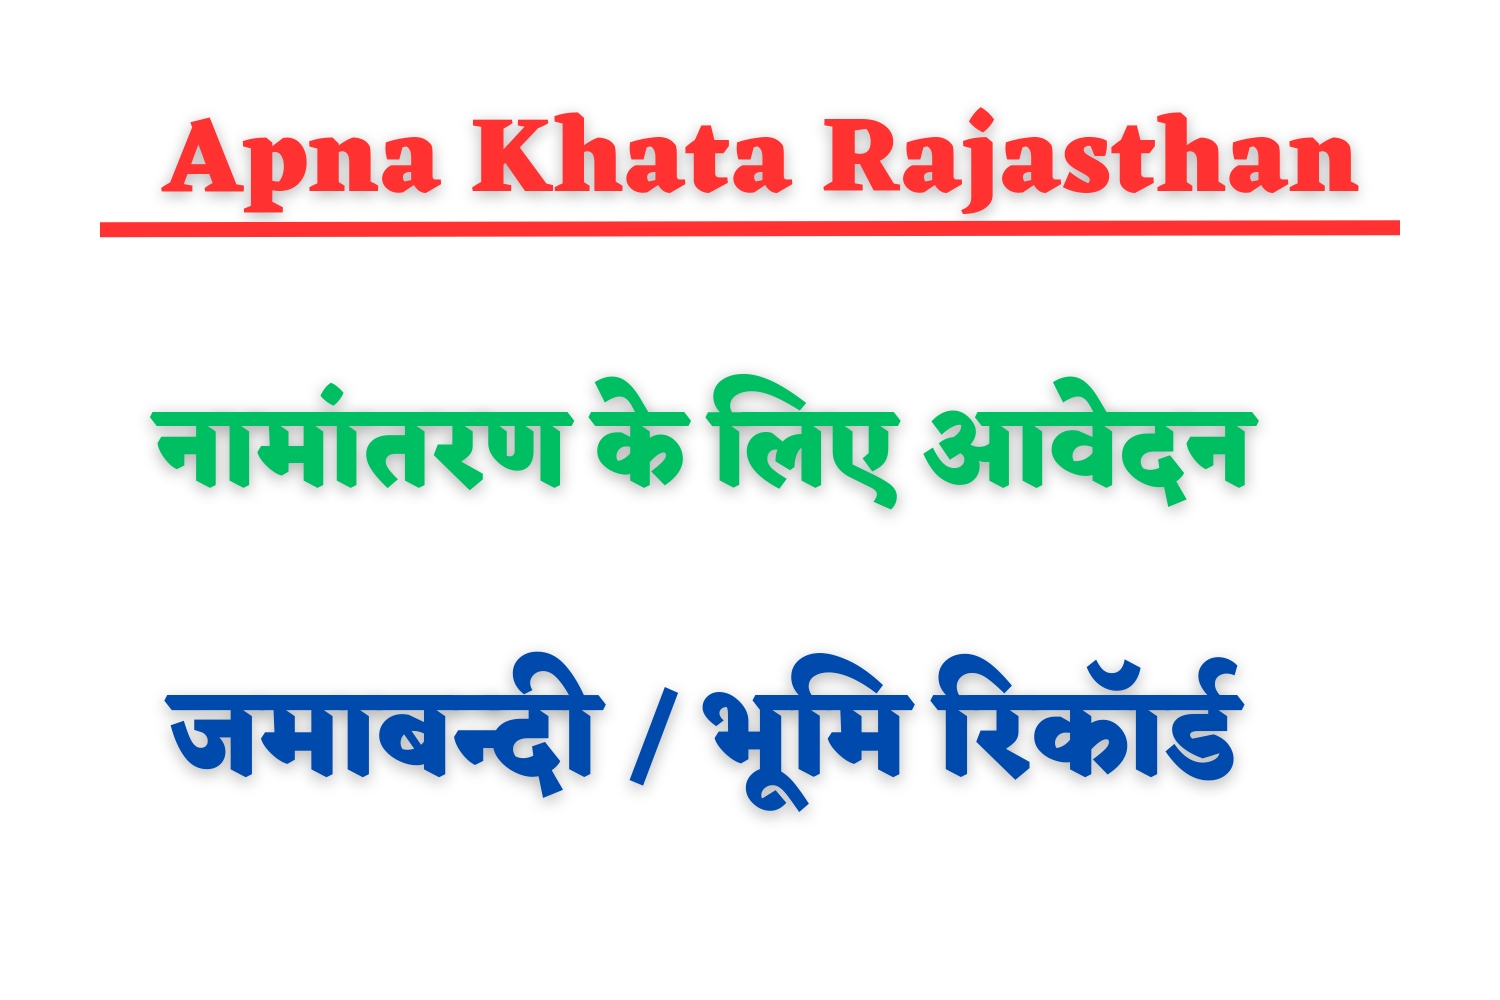 Apna Khata Rajasthan - राजस्थान लैंड रिकॉर्ड (भूलेख), जमाबंदी नकल कैसे देखें? जानें